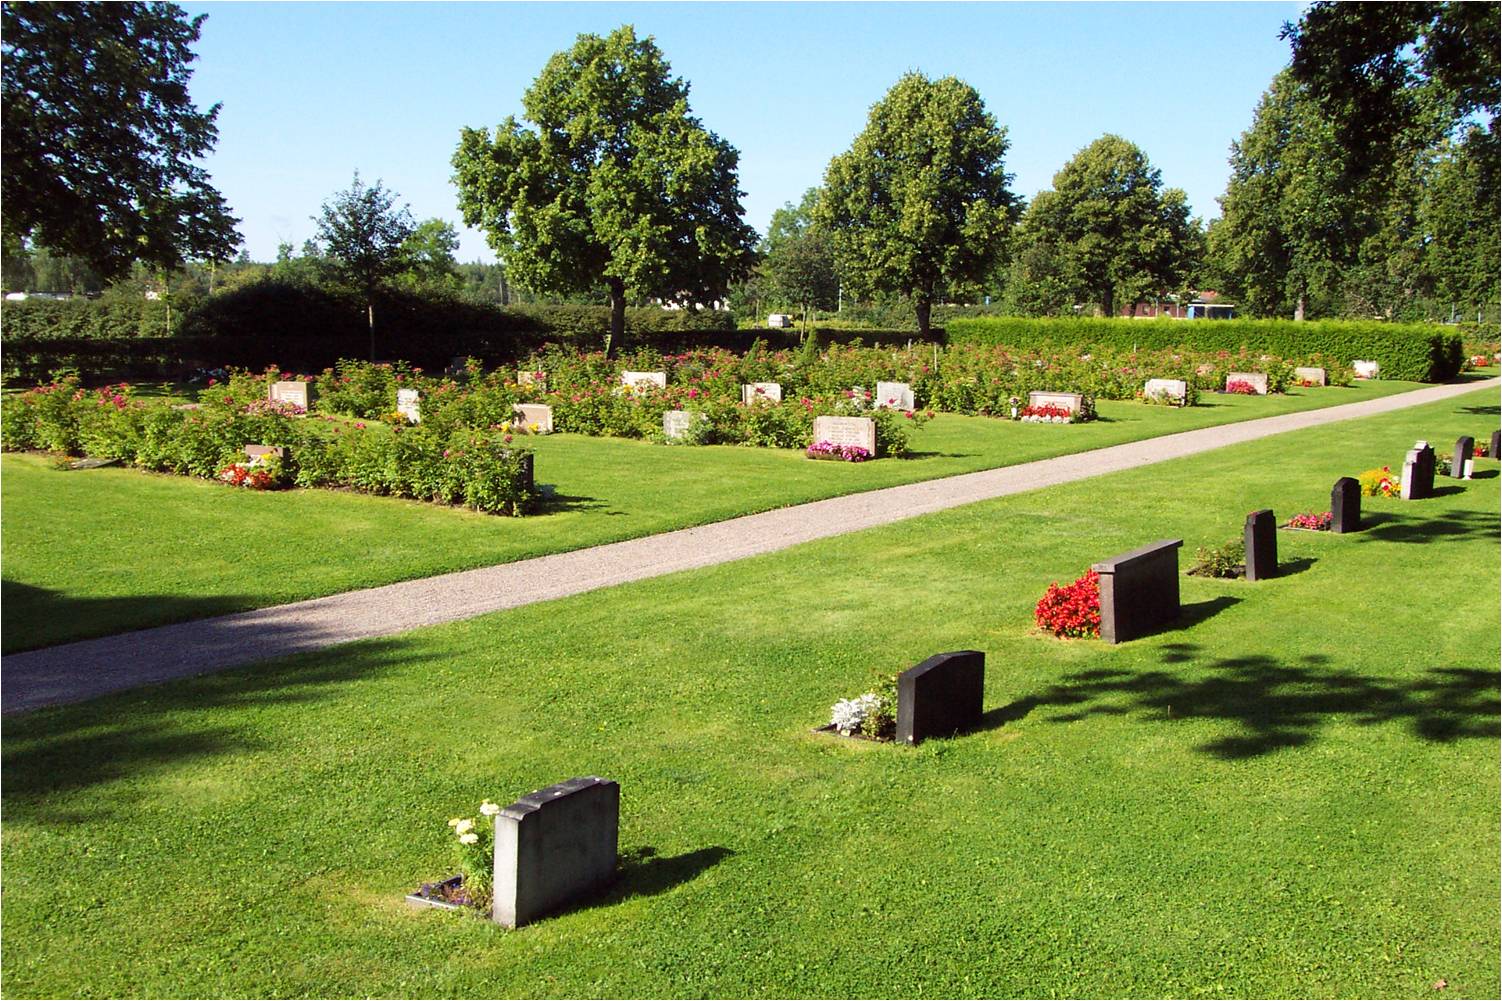 Den Södra kyrkogården som kom till 1941 präglas av tidstypiska låga och breda gravvårdar.
Omkring 1980 planterades rygghäckar av vresros
